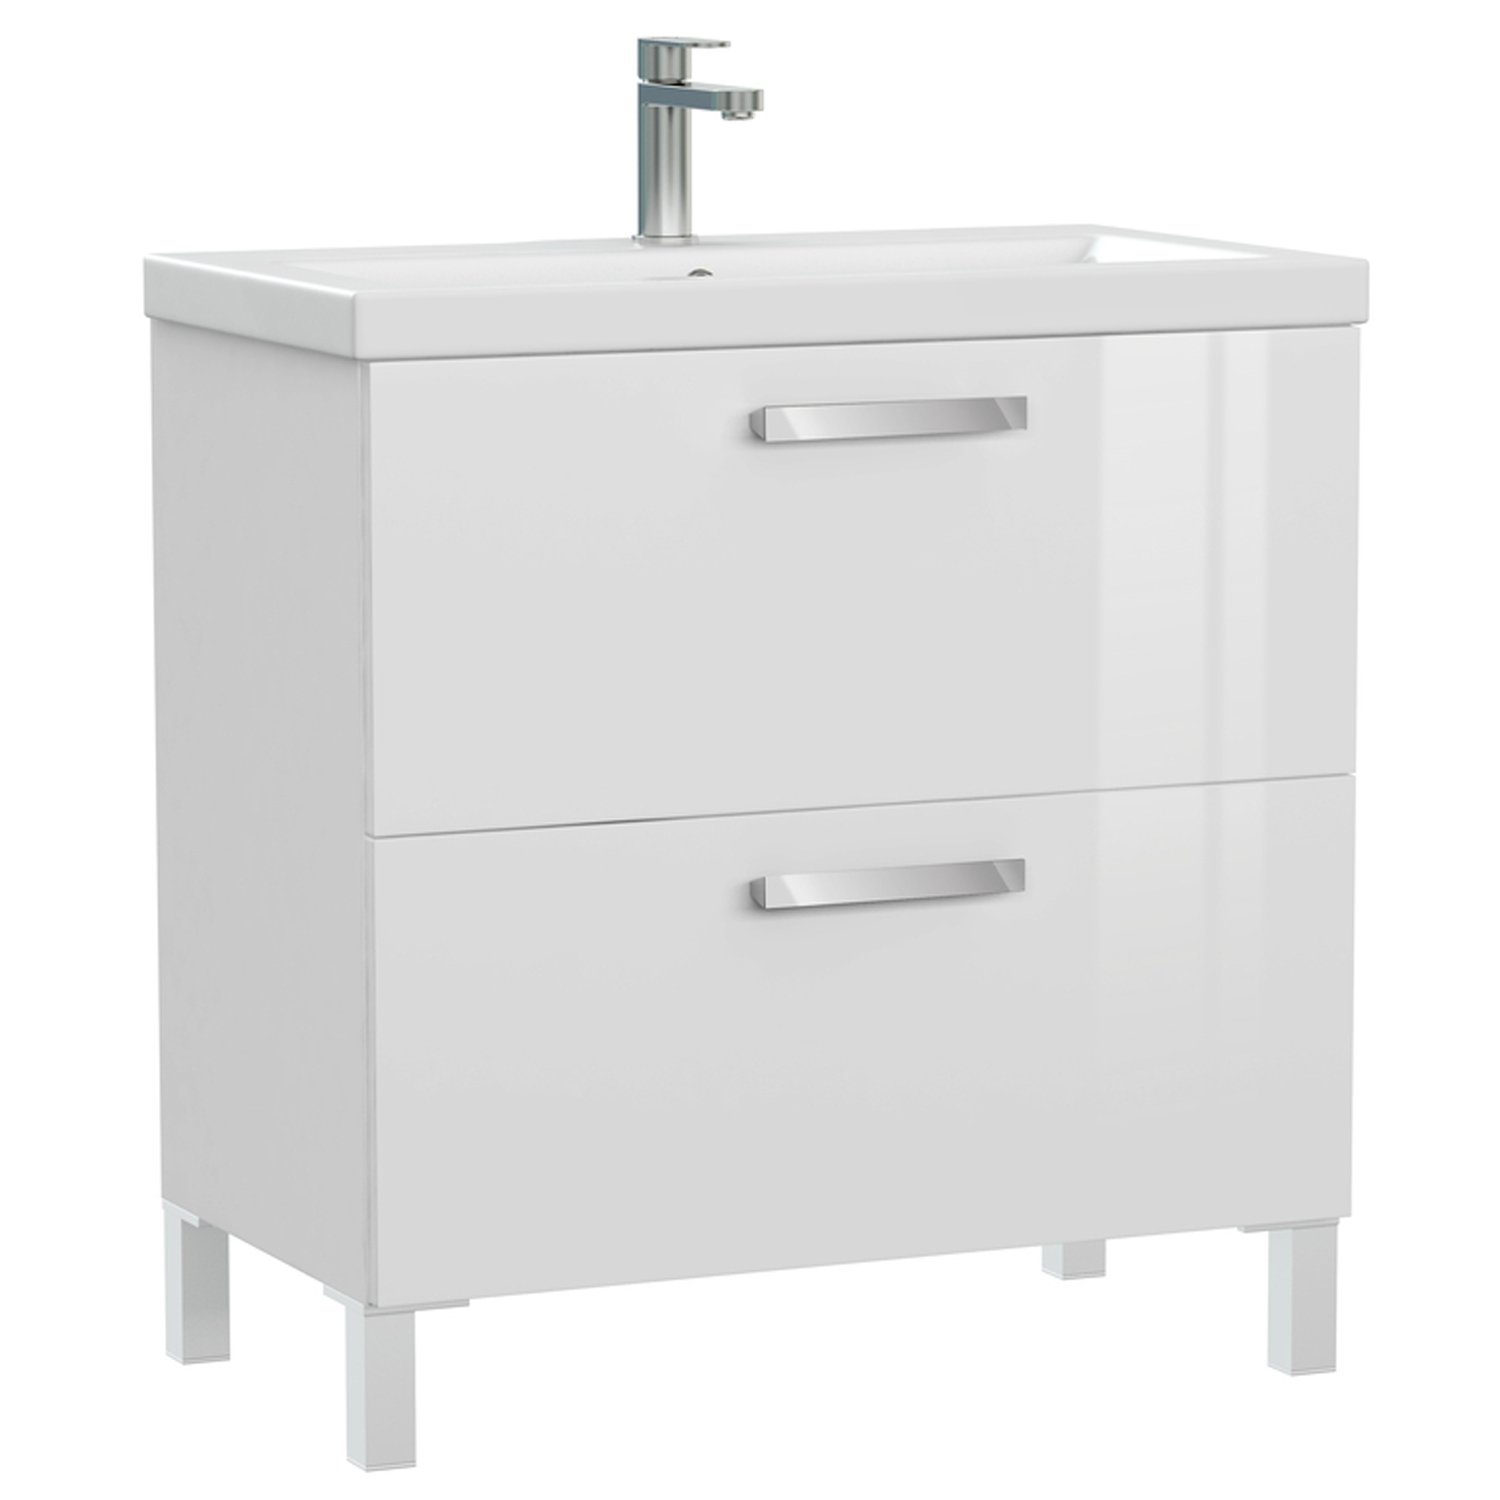 Мебель для ванной Cersanit Melar 80, с раковиной и смесителем, цвет белый - фото 1